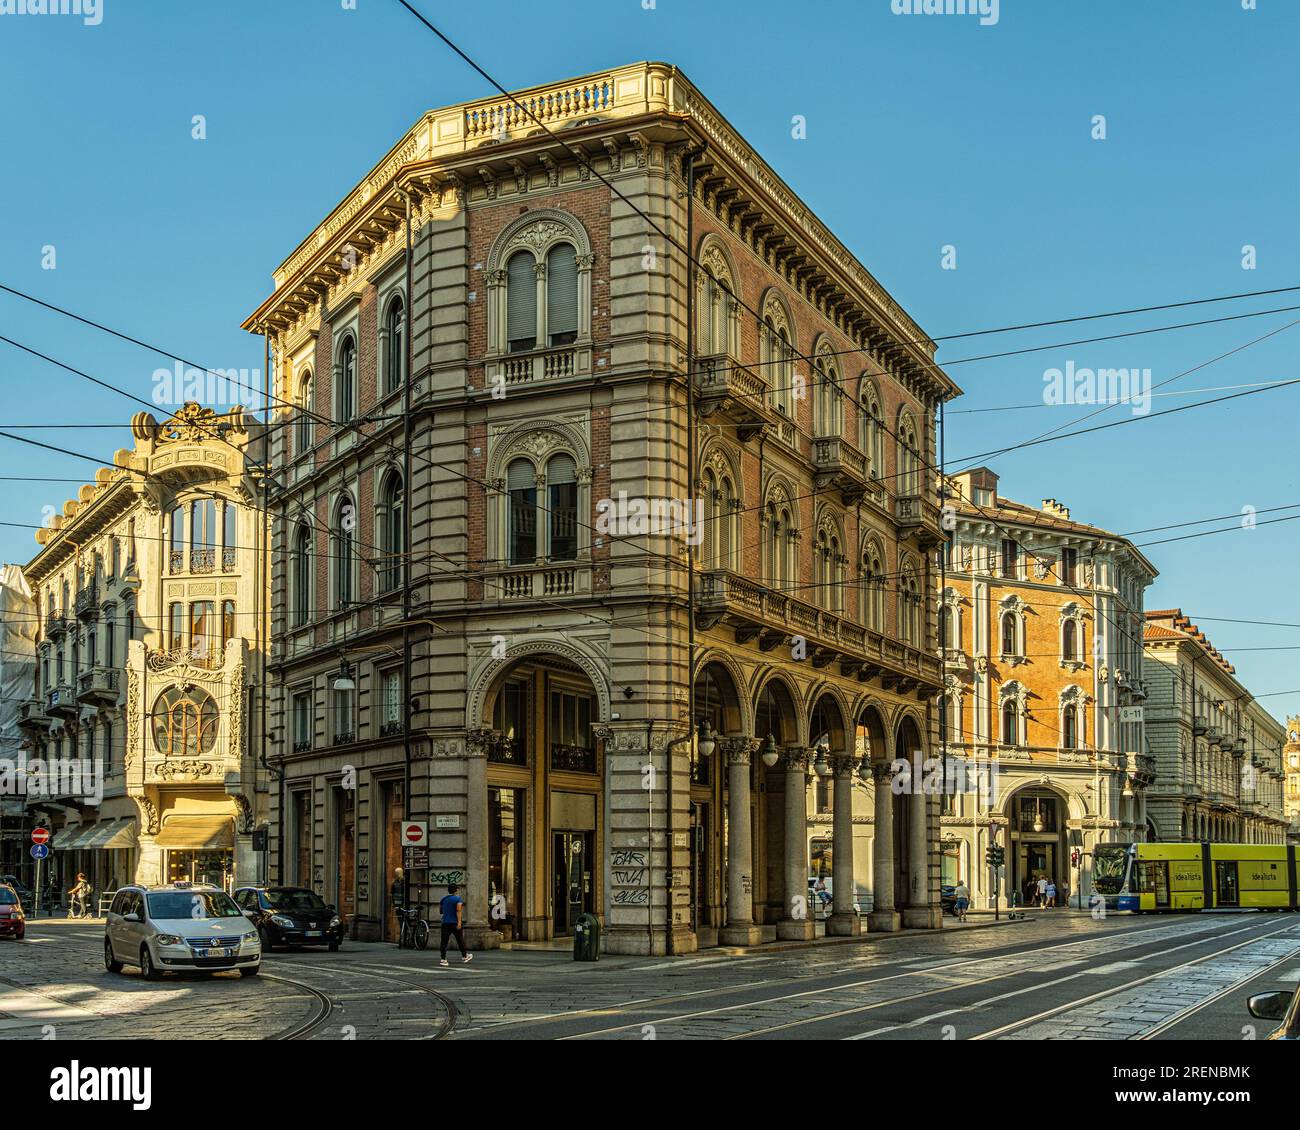 Storico palazzo nobiliare, nel cuore del centro storico, in via Pietro Micca con archi e portici tradizionali della città di Torino. Piemonte Foto Stock